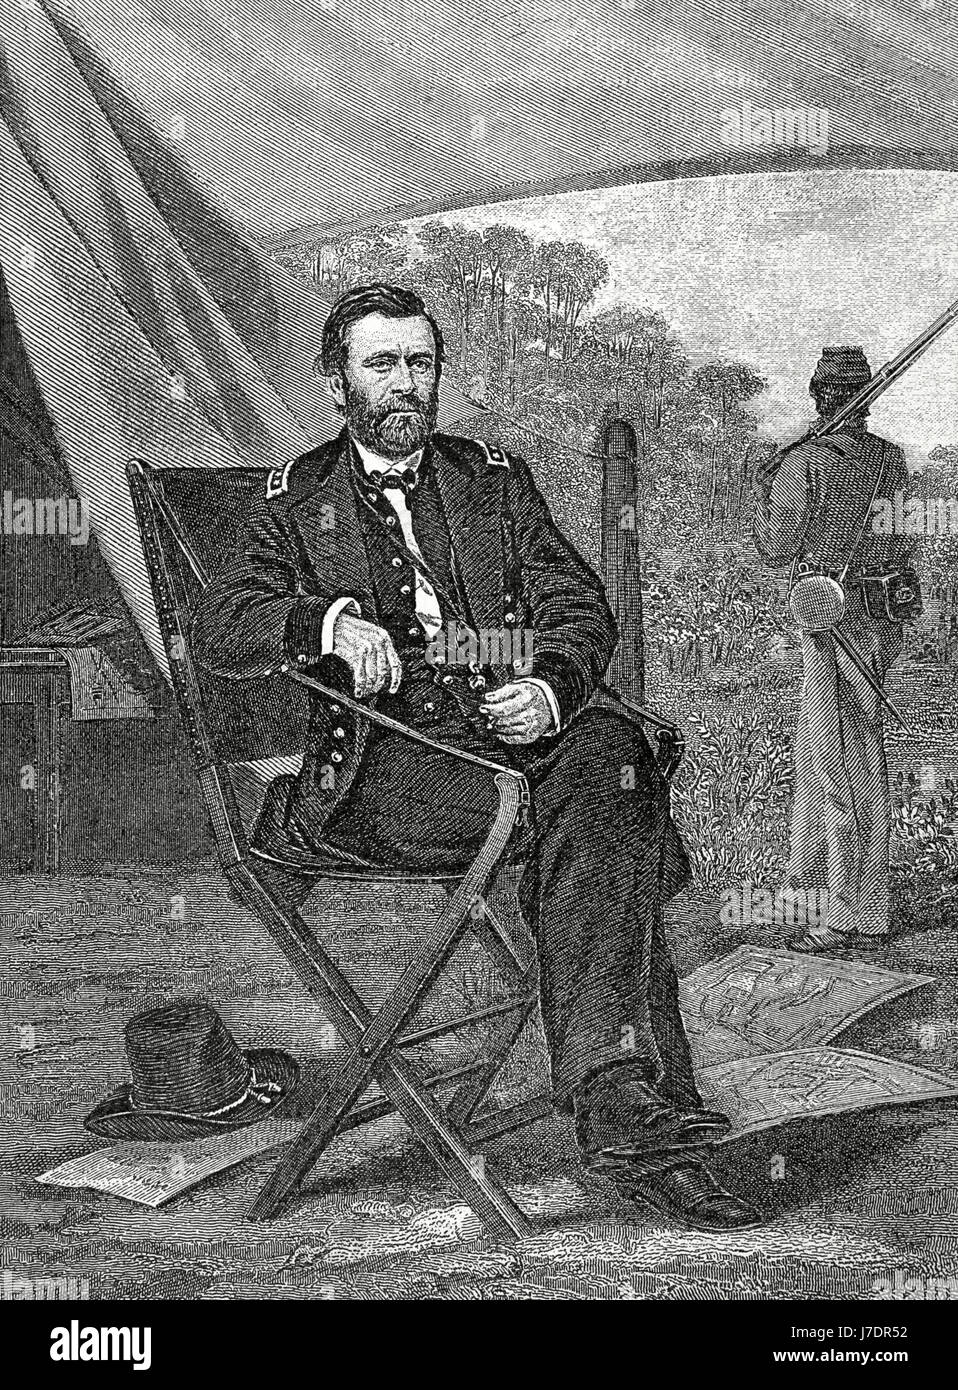 Ulysses S. Grant (1822-1885). Militär und North American Politiker. 18. Präsident der USA (1869-1877). Porträt. Gravur. "Historia Universal", 1885. Stockfoto